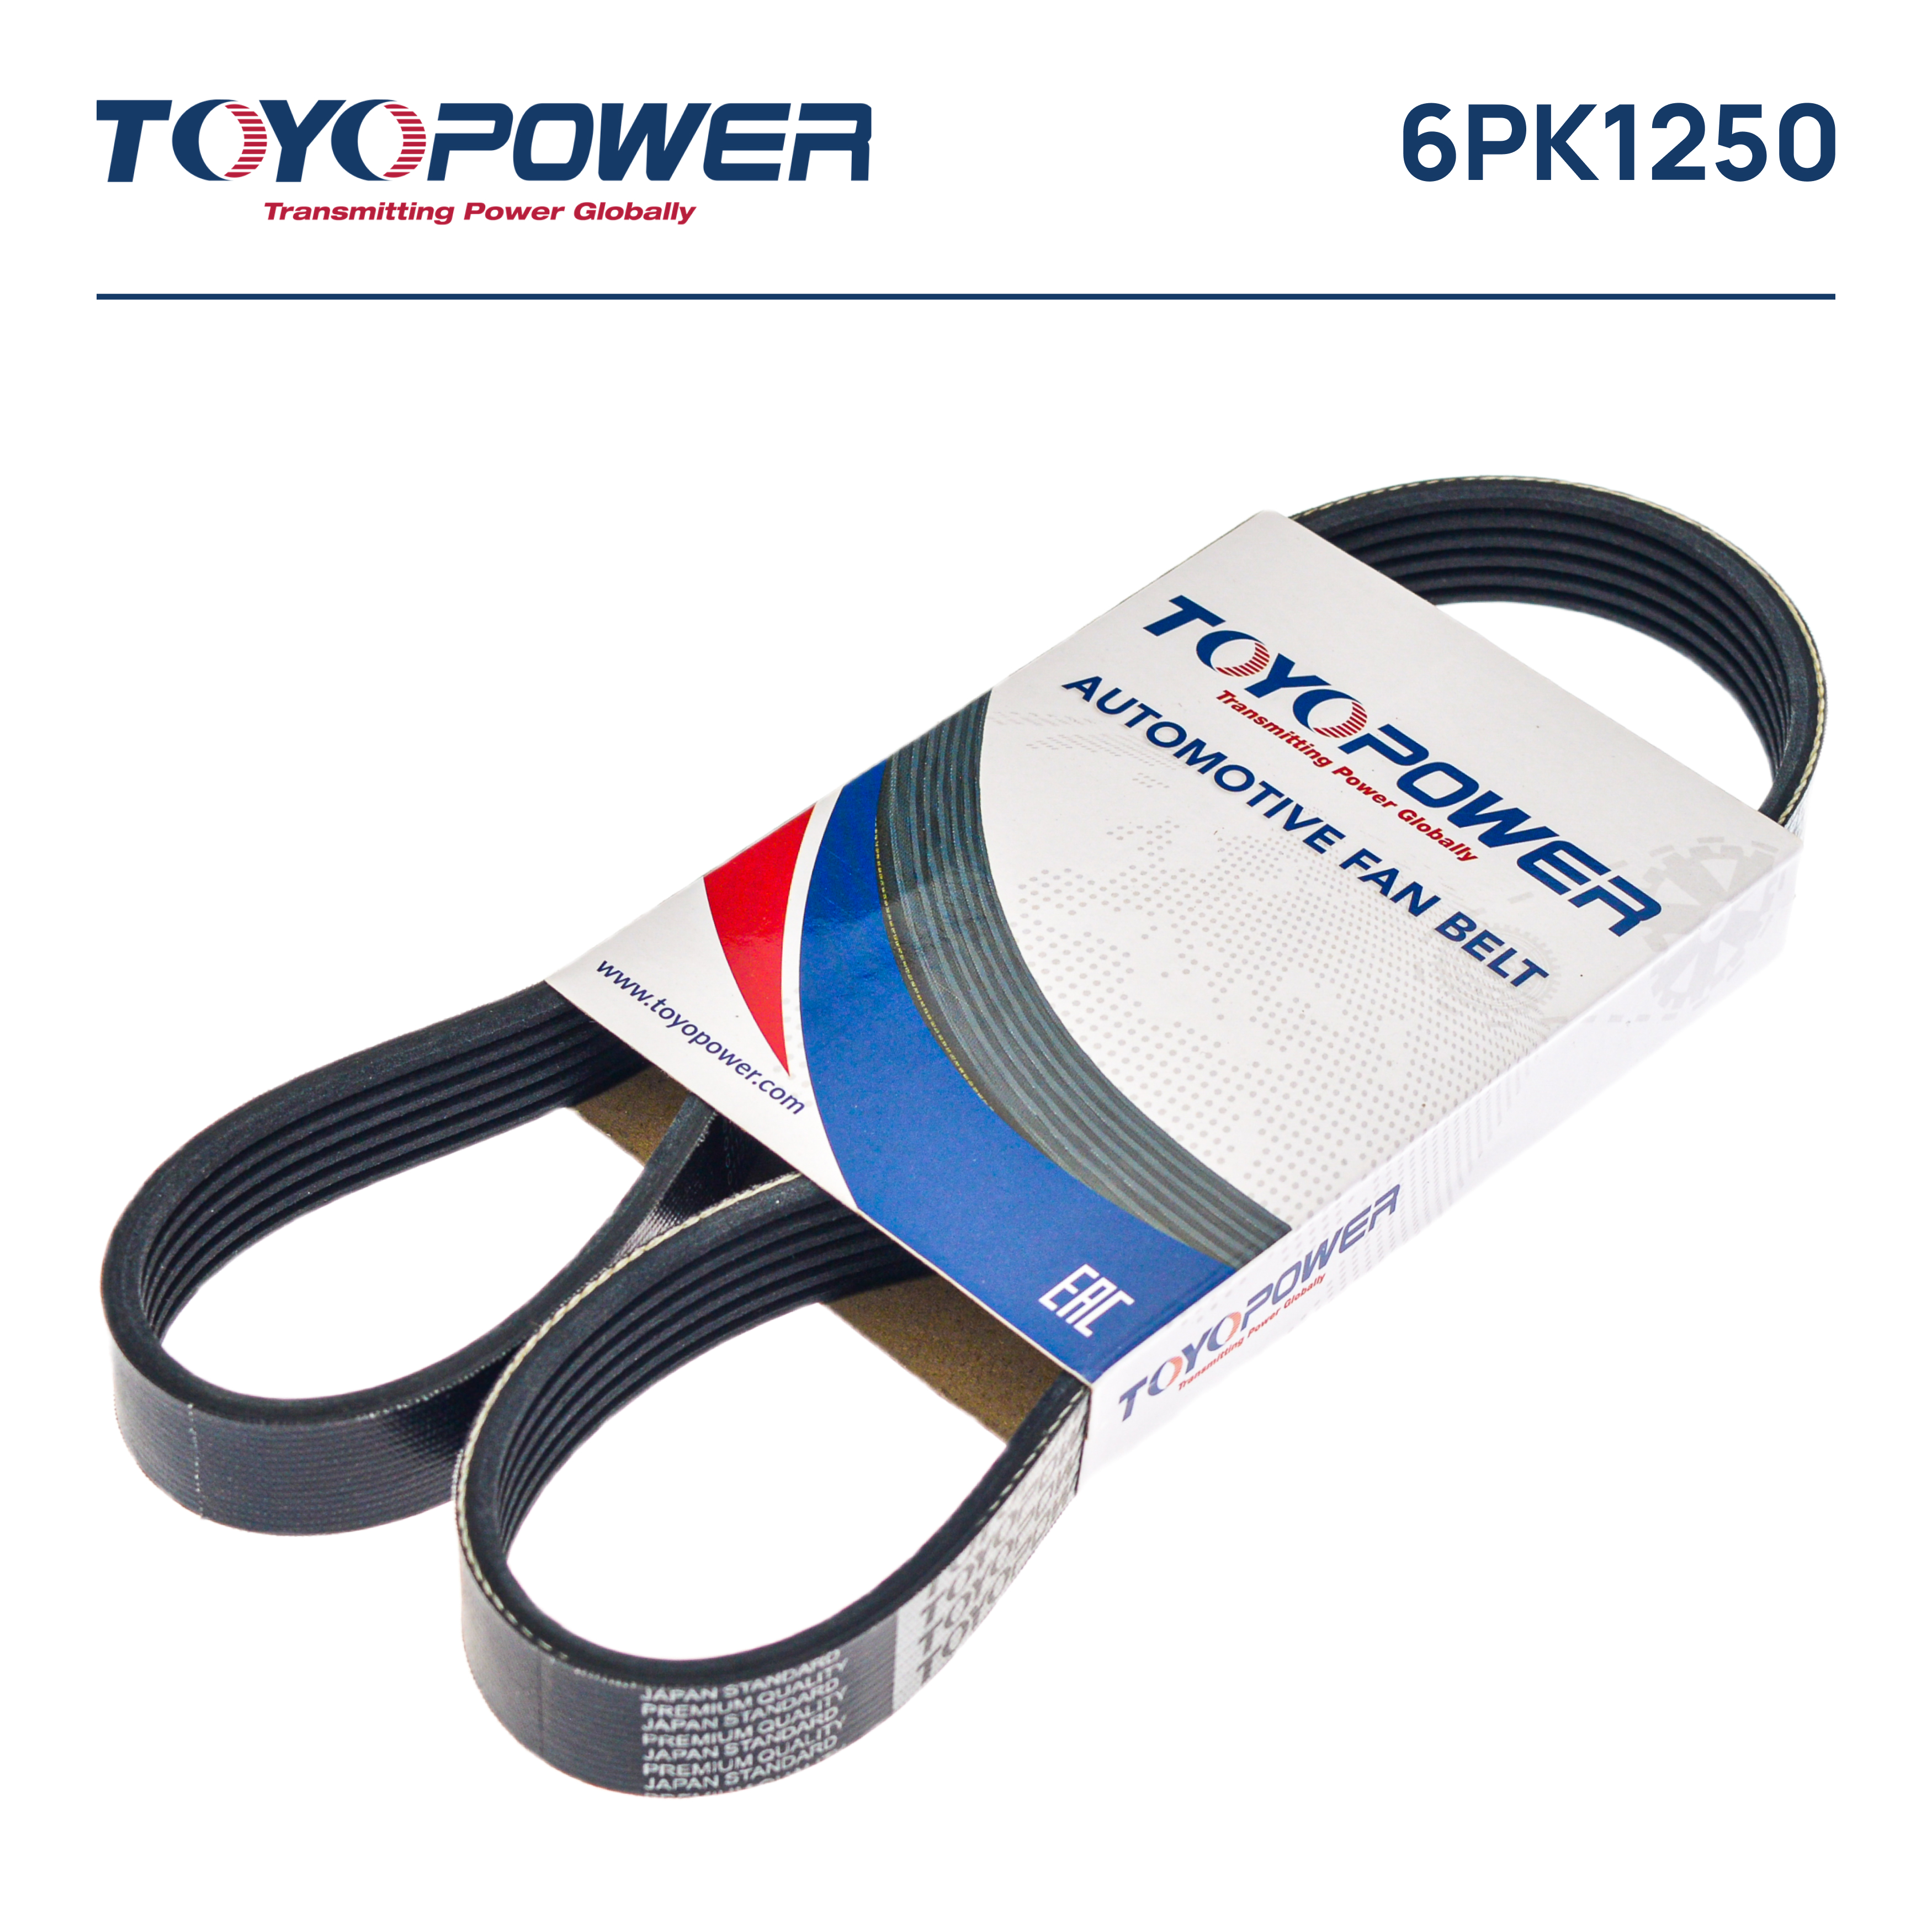 Ремень поликлиновый - Toyopower 6PK1250